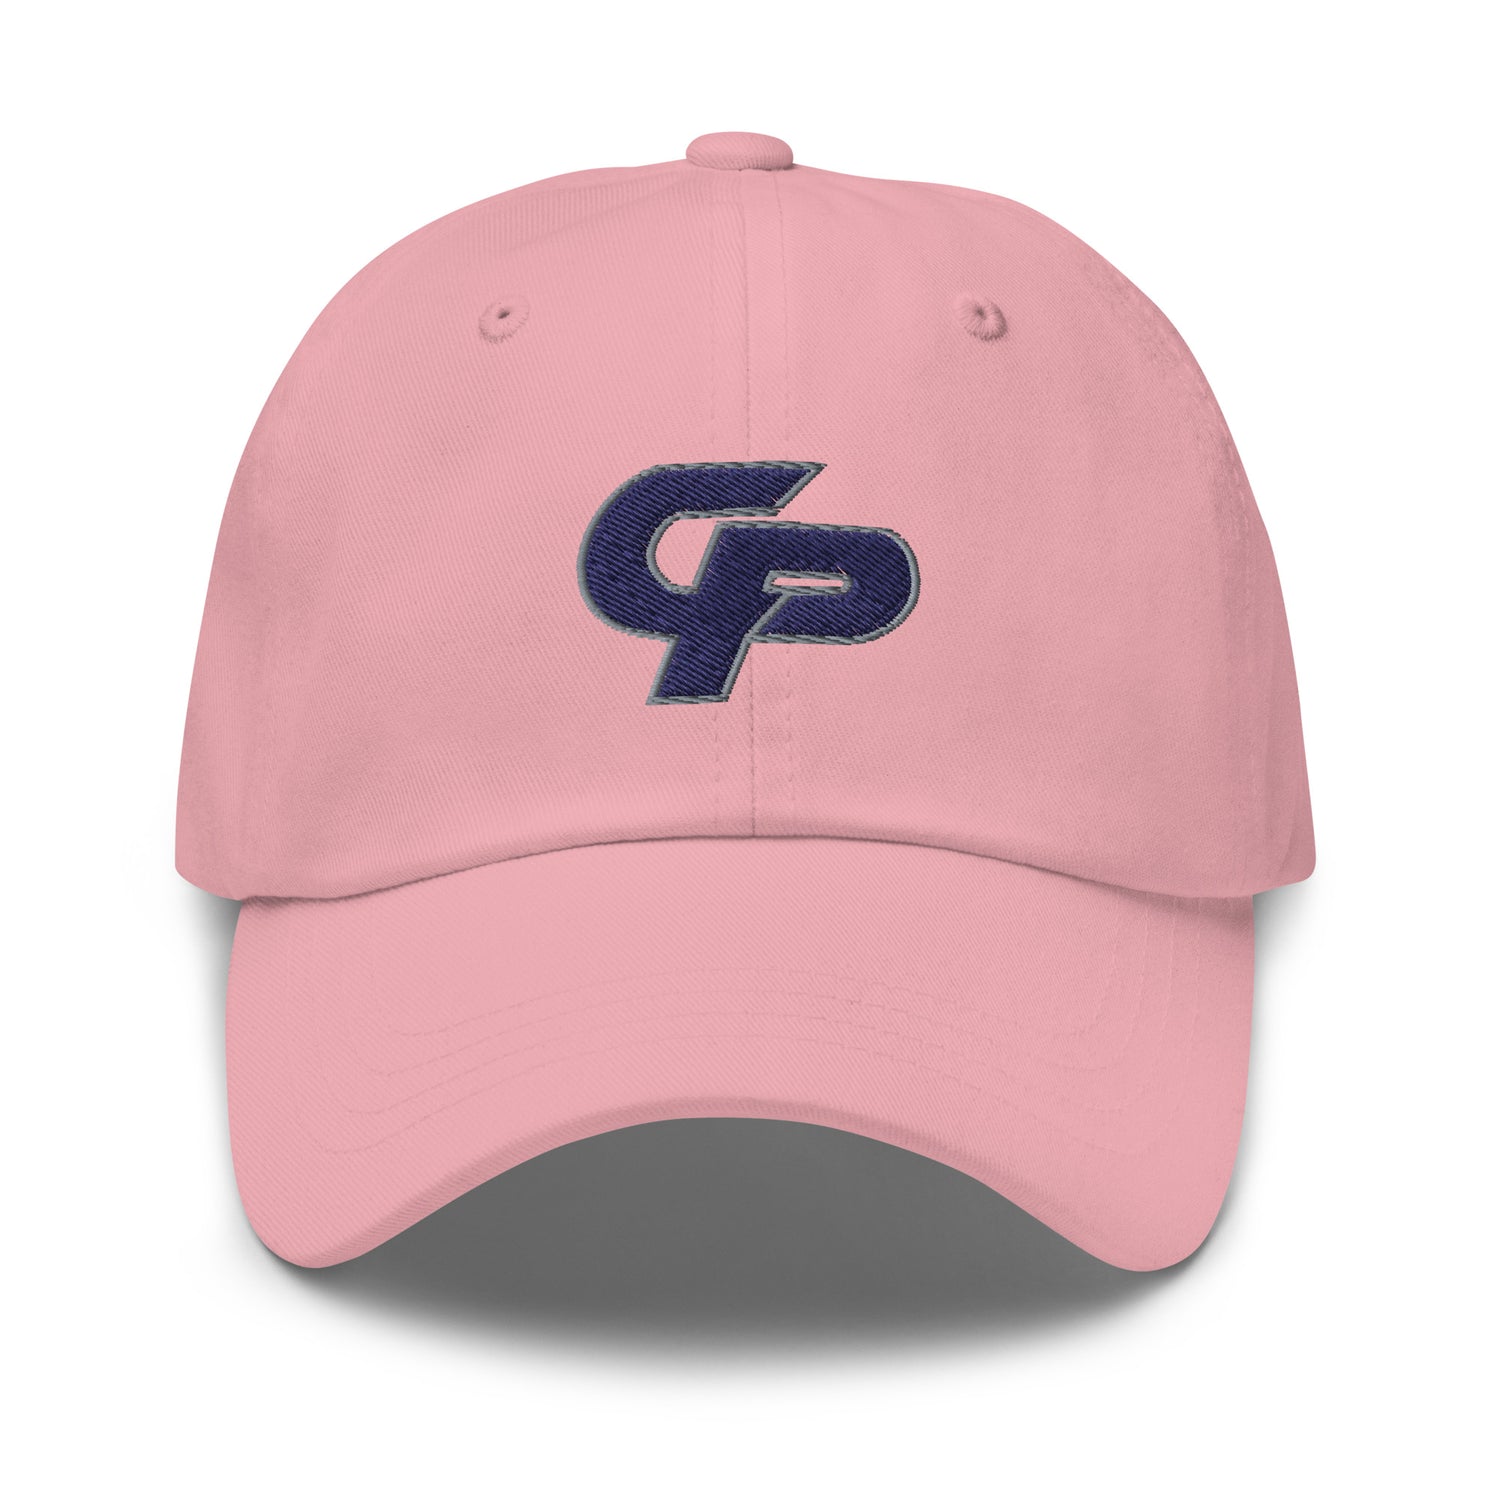 Chop Paljor "Essential" hat - Fan Arch